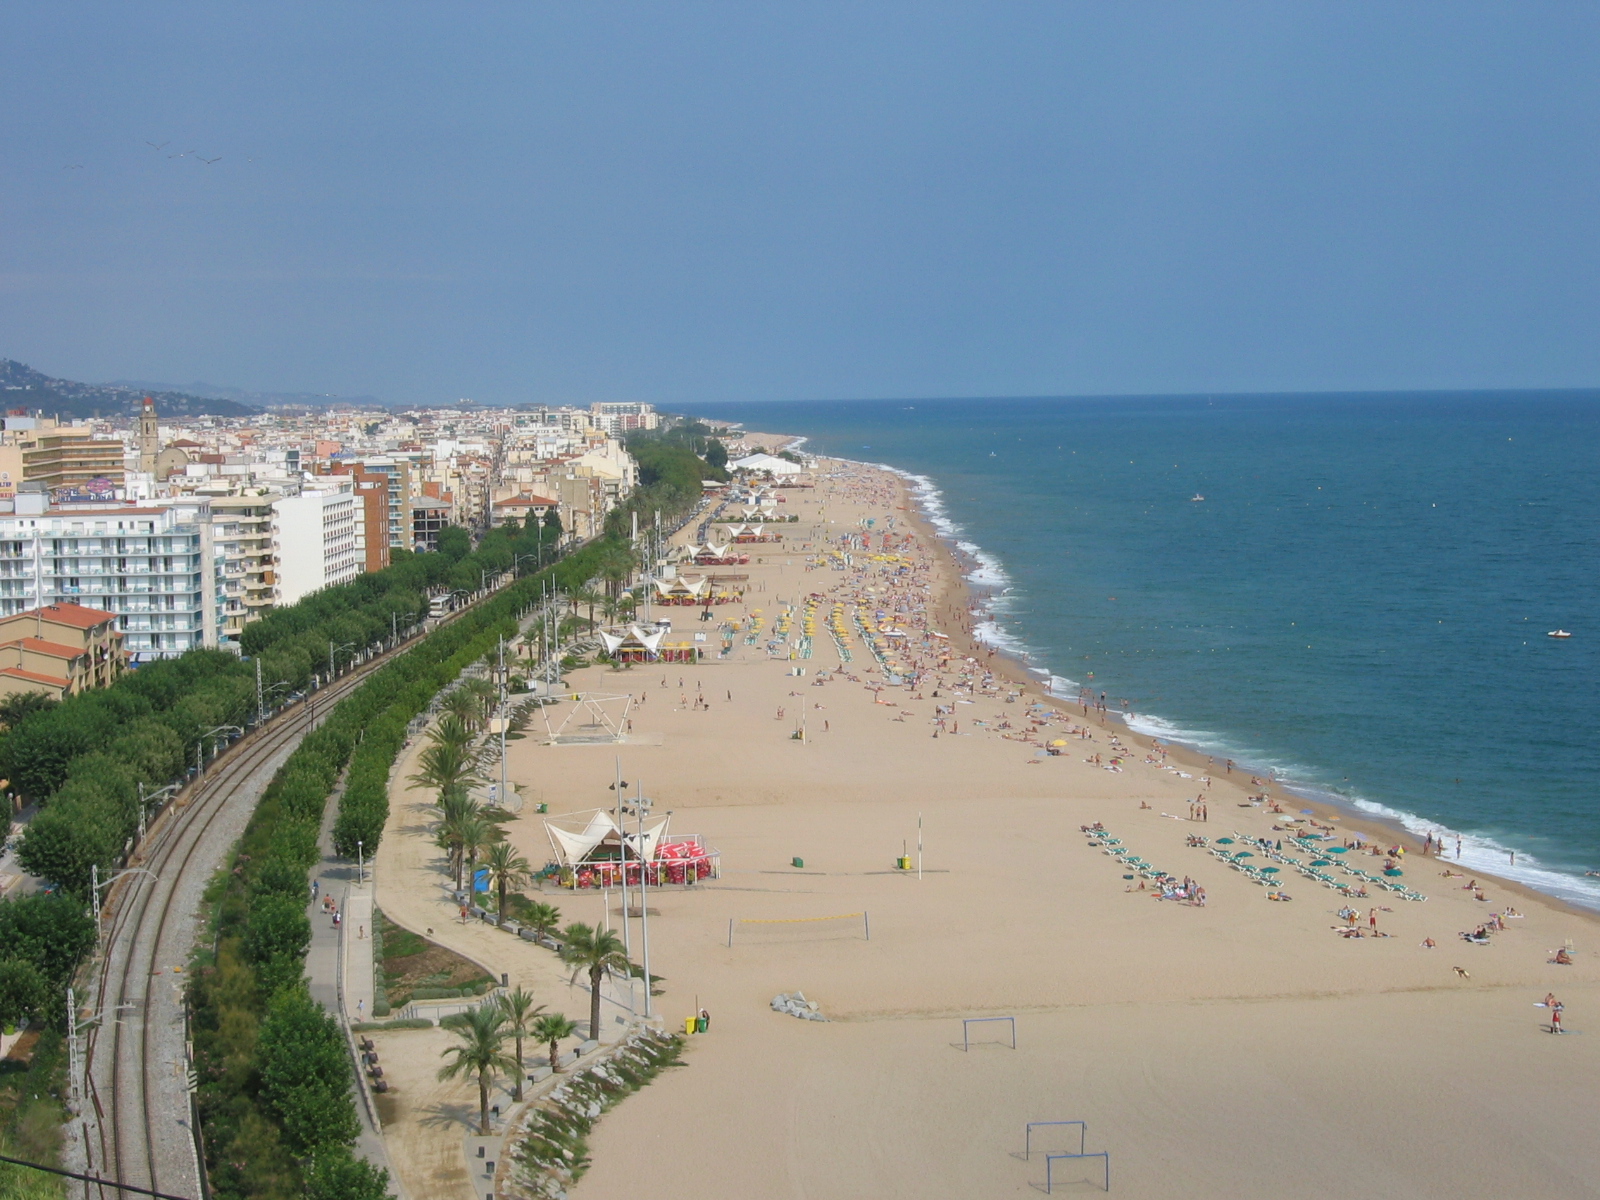 http://upload.wikimedia.org/wikipedia/en/4/43/Spain-calella-beach.jpg